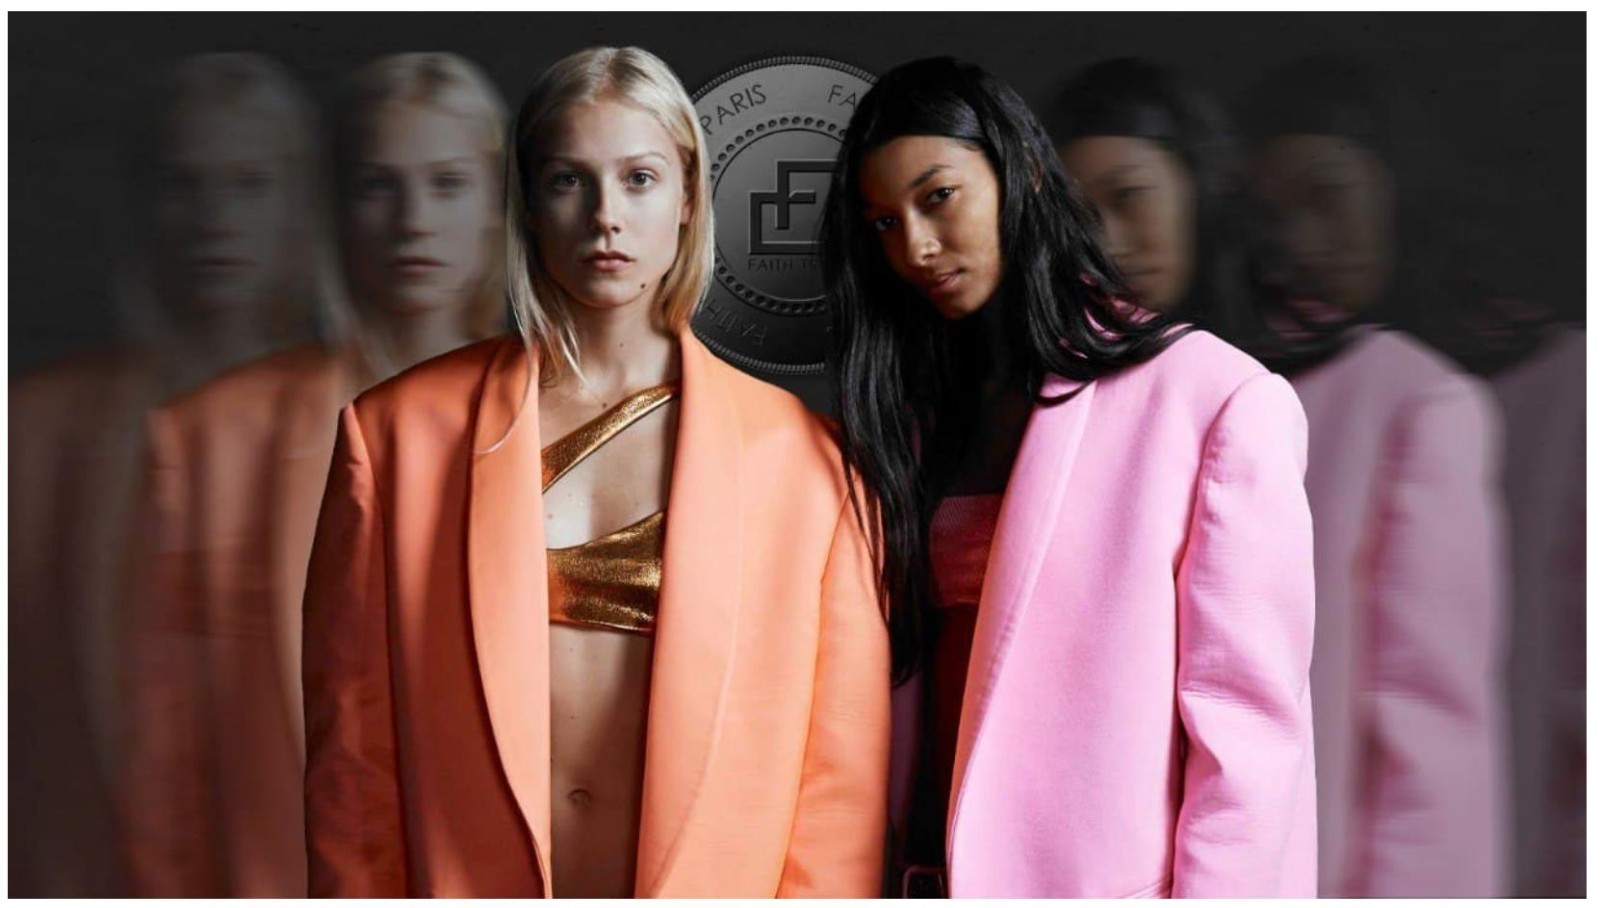 巴黎著名时尚品牌Faith Connexion启动其区块链项目 $FTRB